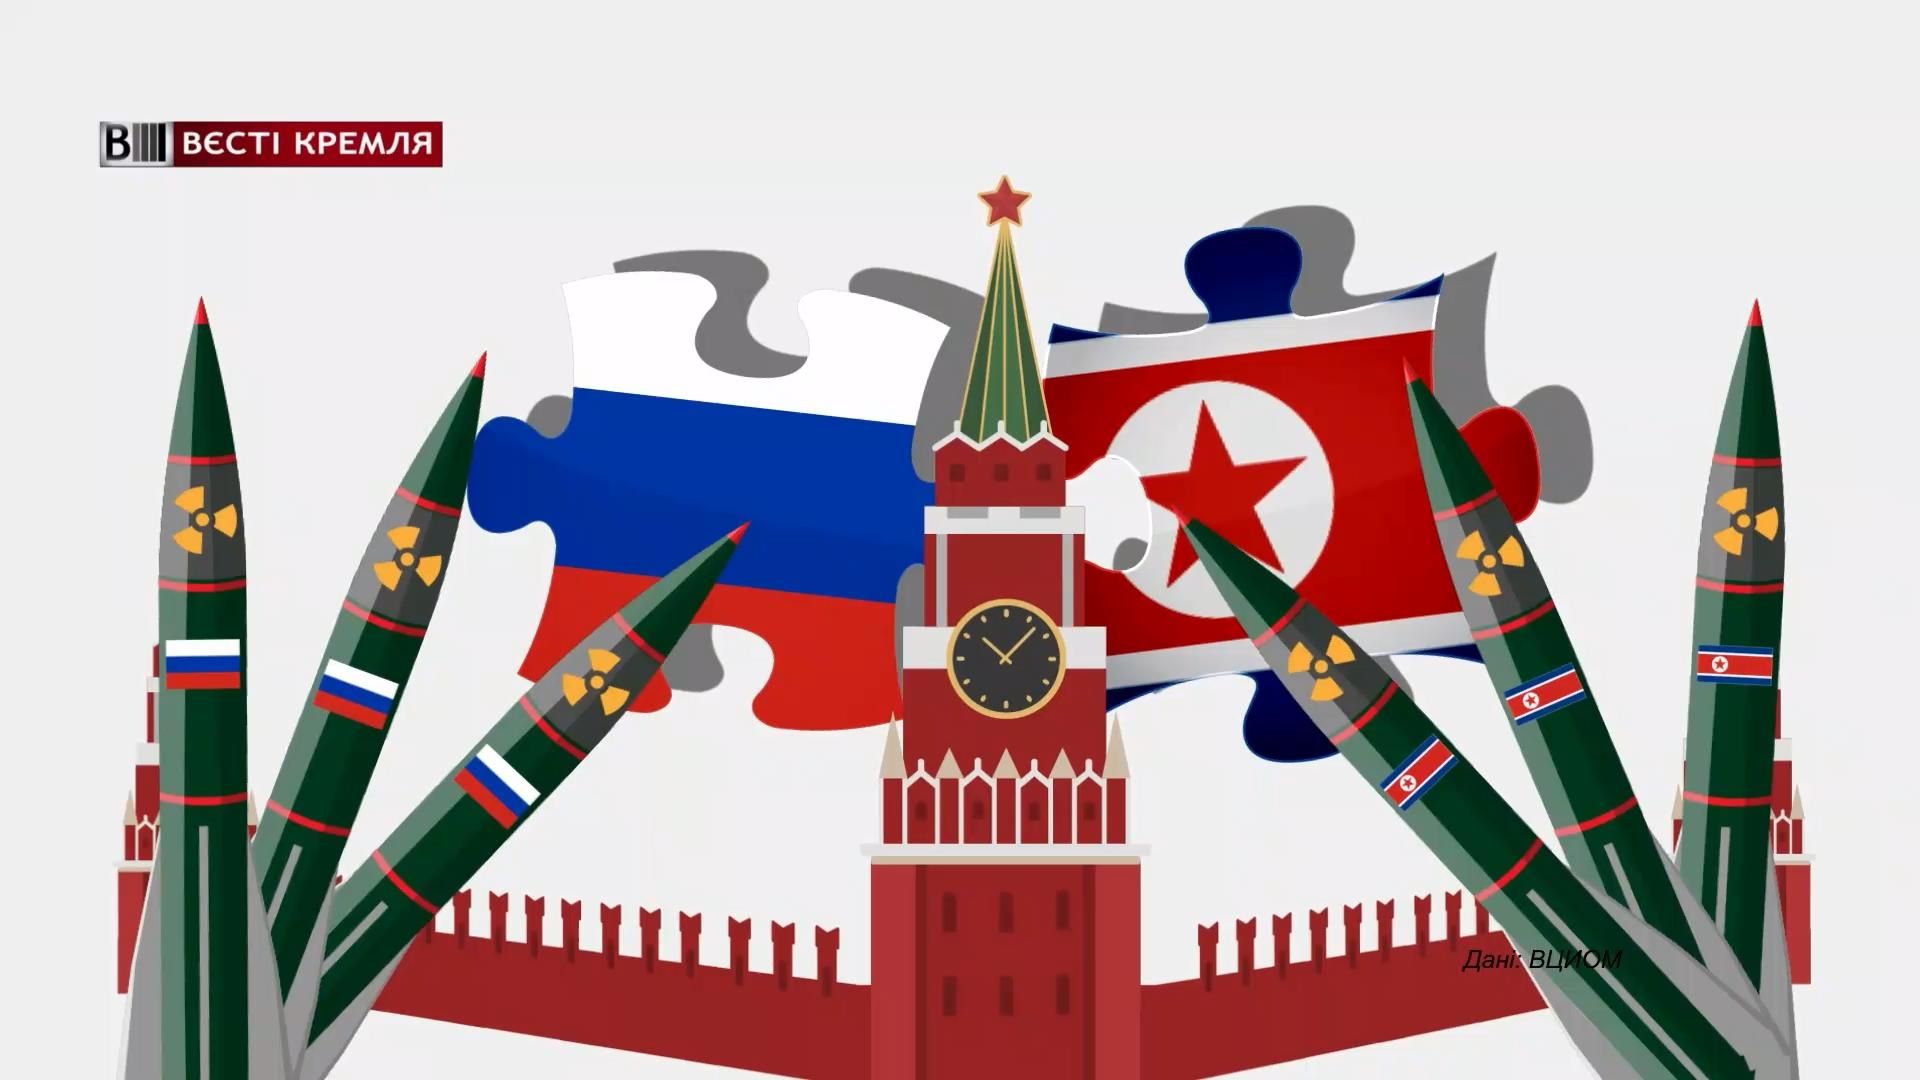 Скільки росіян вважають, що КНДР може стати стратегічним партнером Кремля